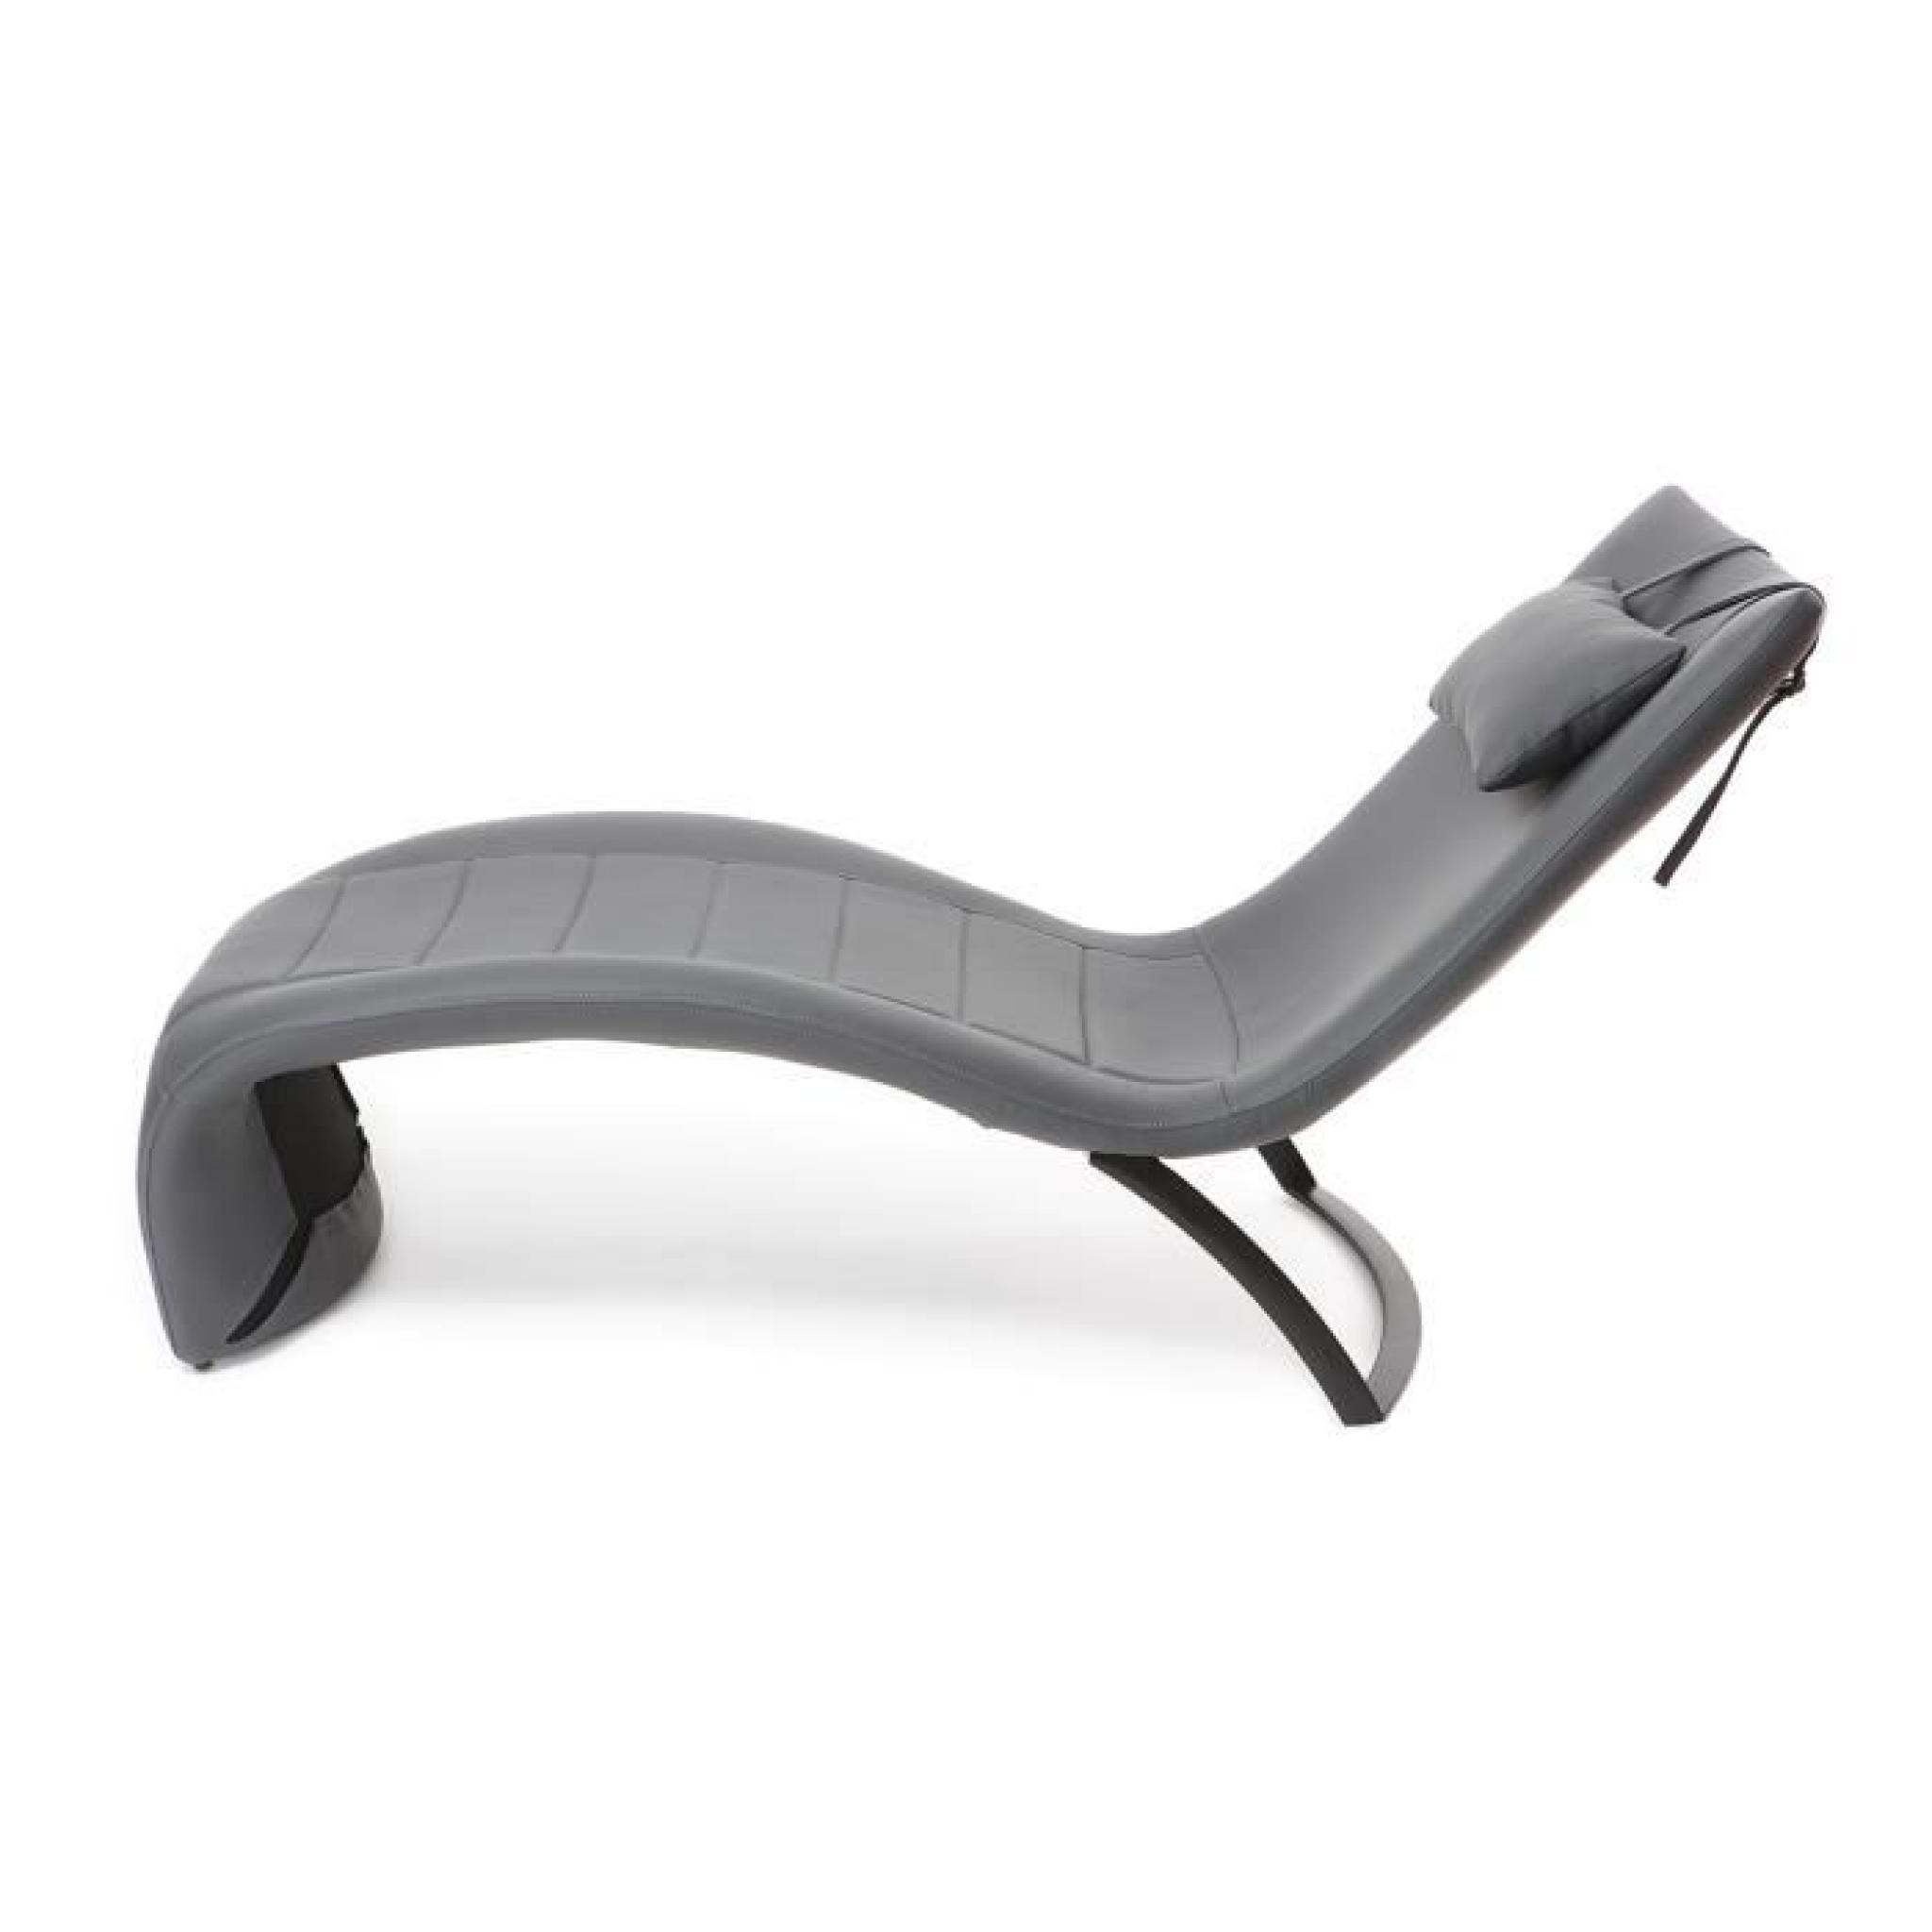 Chaise longue design gris PENSY pas cher